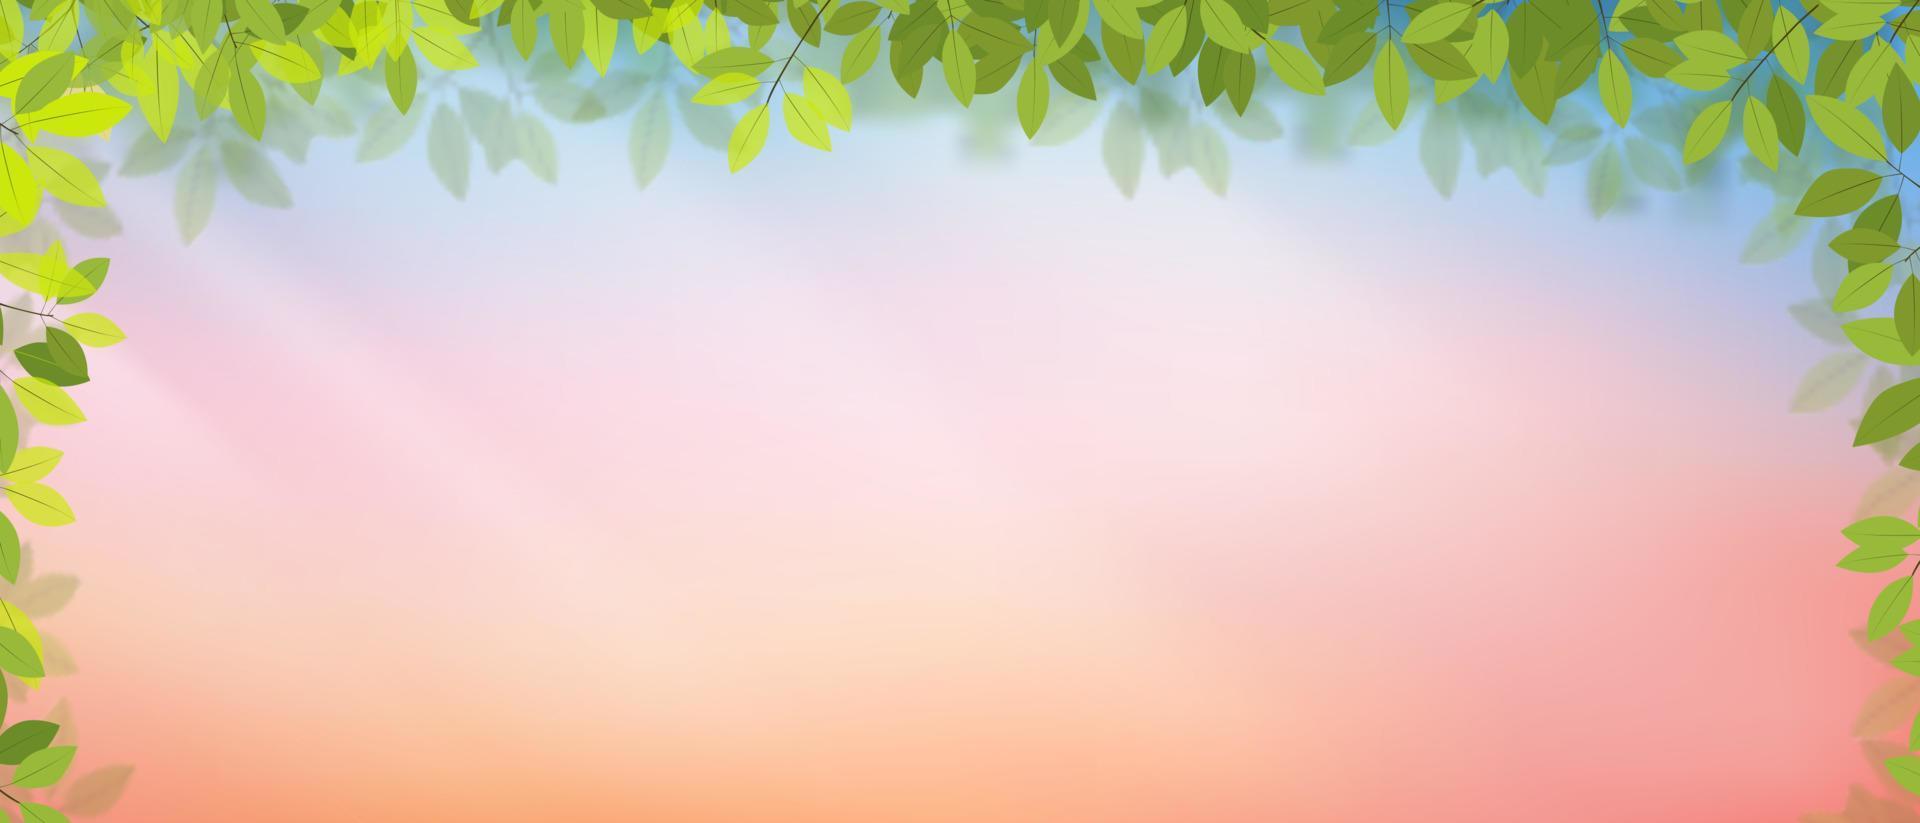 quadro de folhas verdes de fundo de primavera no céu pastel em fundo rosa e laranja, desenho vetorial com espaço de cópia com sol brilhando de manhã, banner de pano de fundo para a páscoa, olá primavera, férias de verão vetor